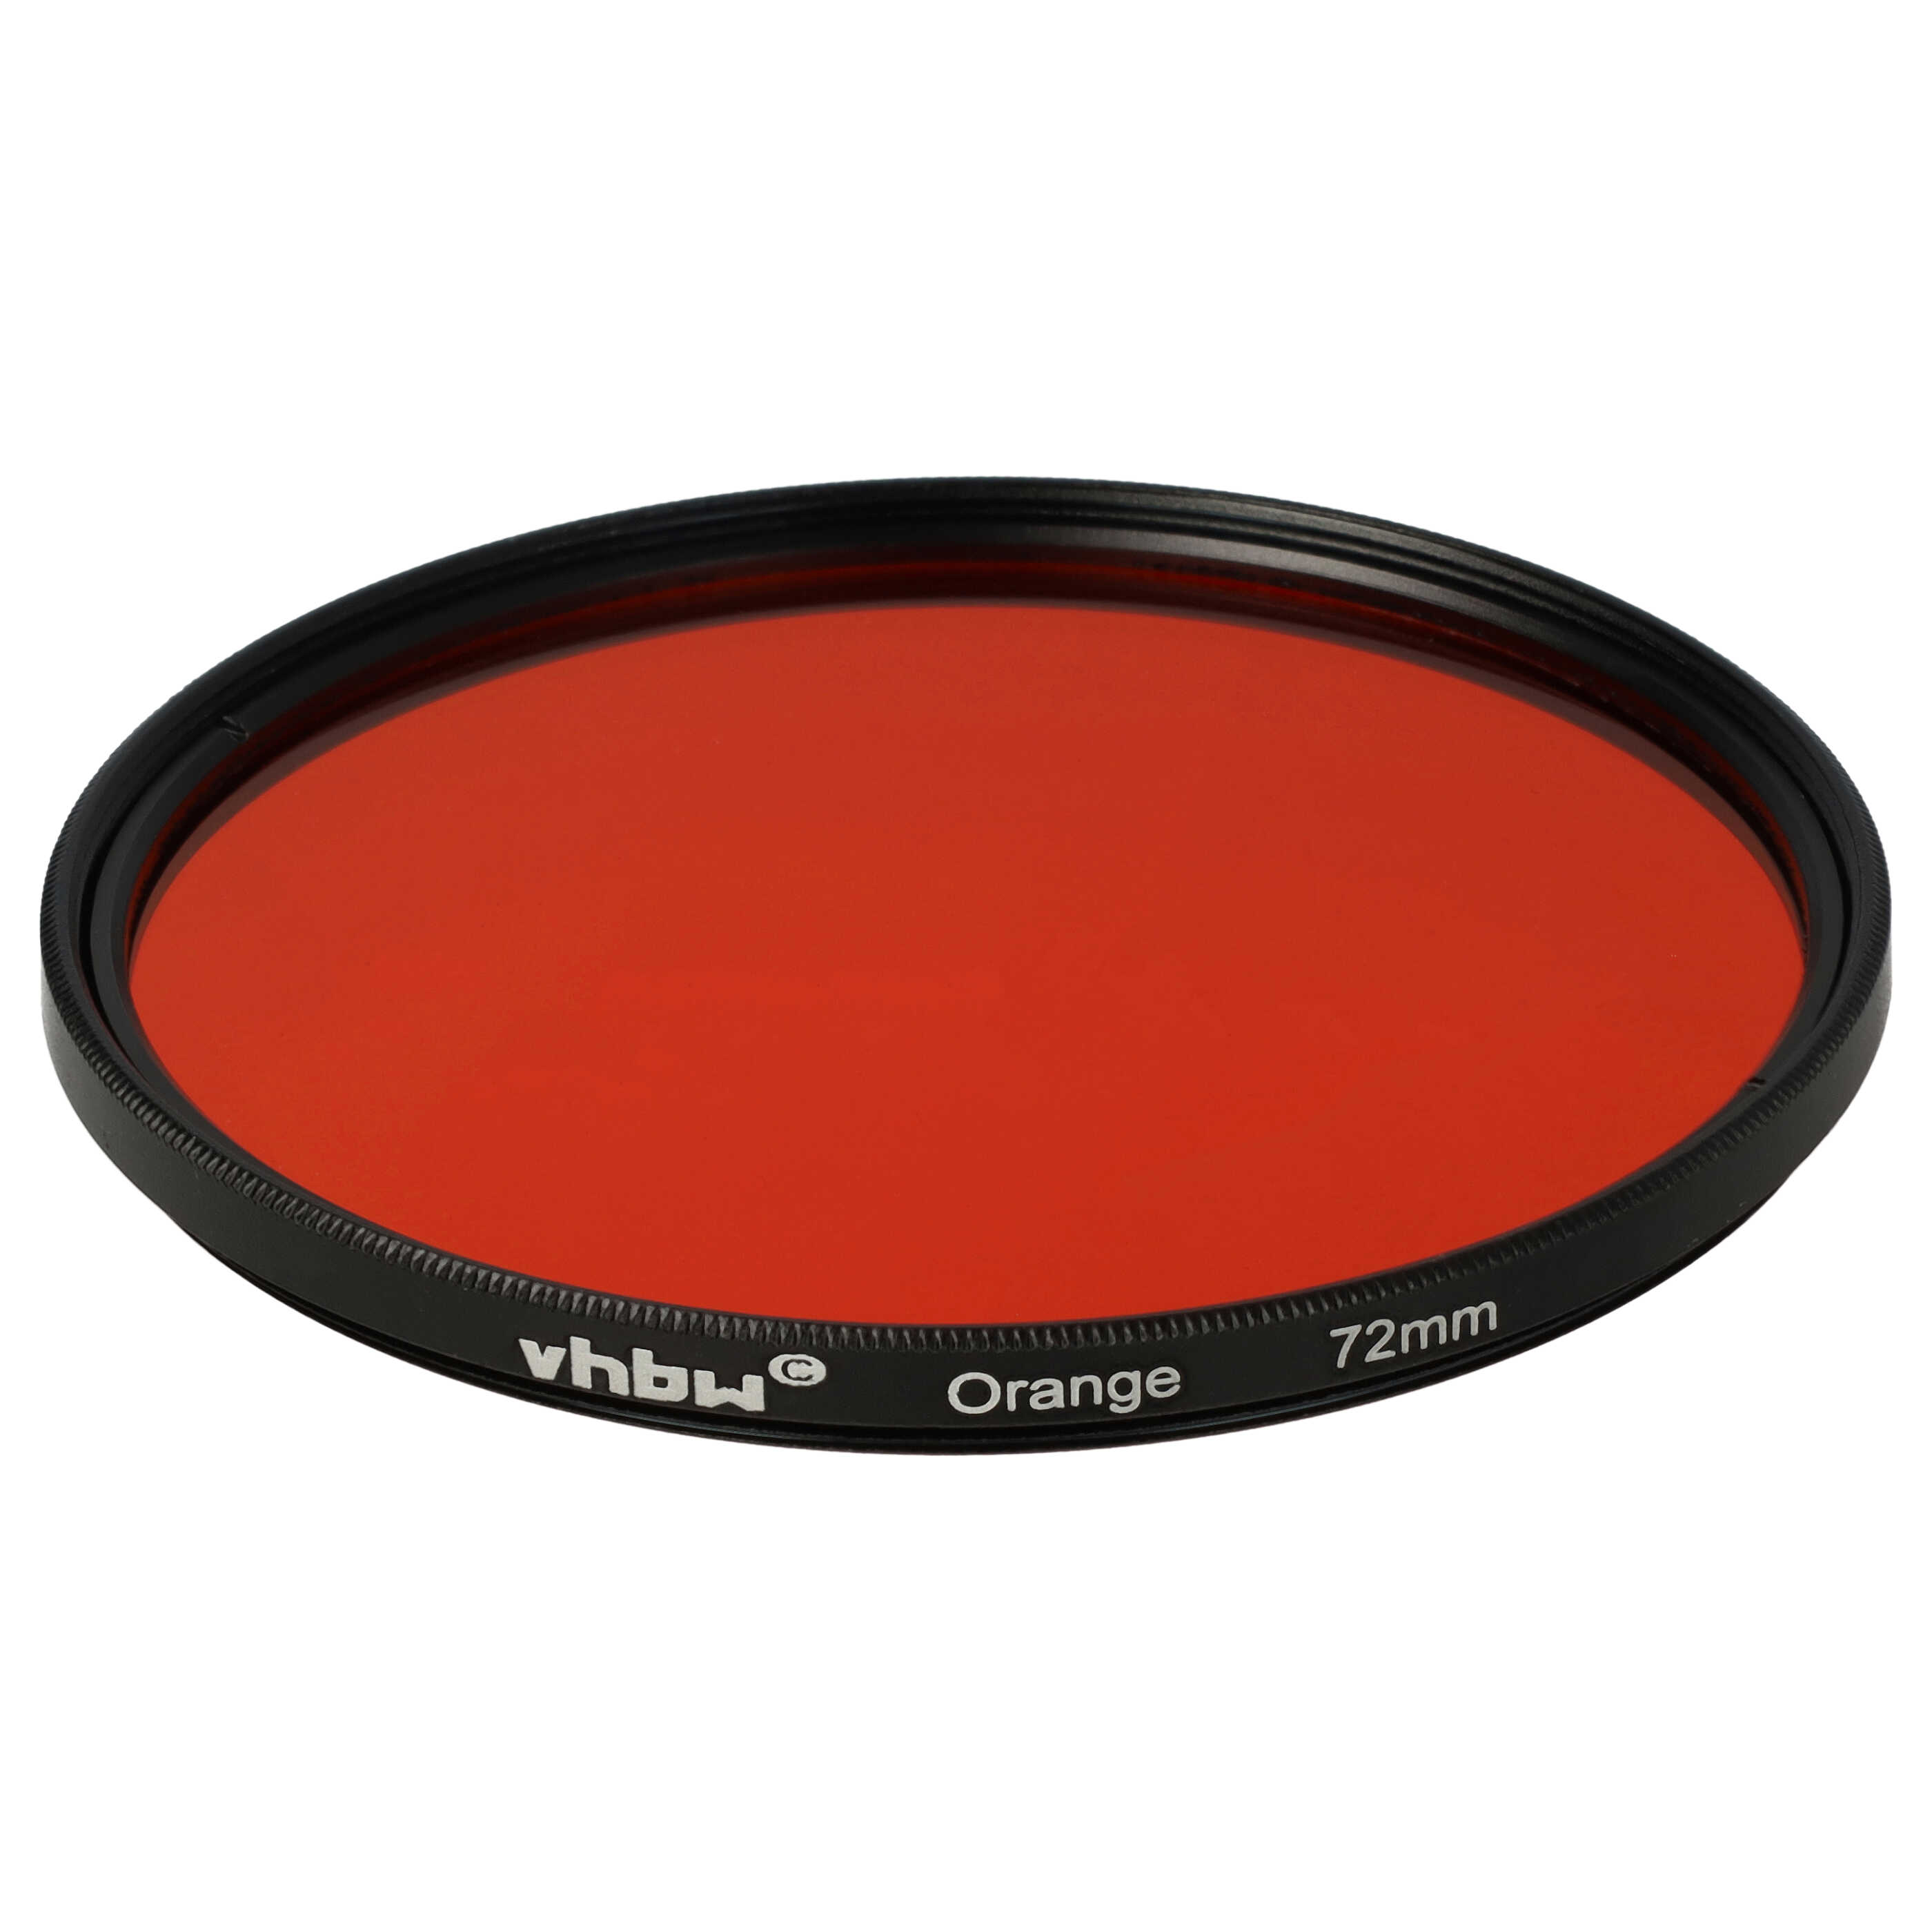 Farbfilter orange passend für Kamera Objektive mit 72 mm Filtergewinde - Orangefilter